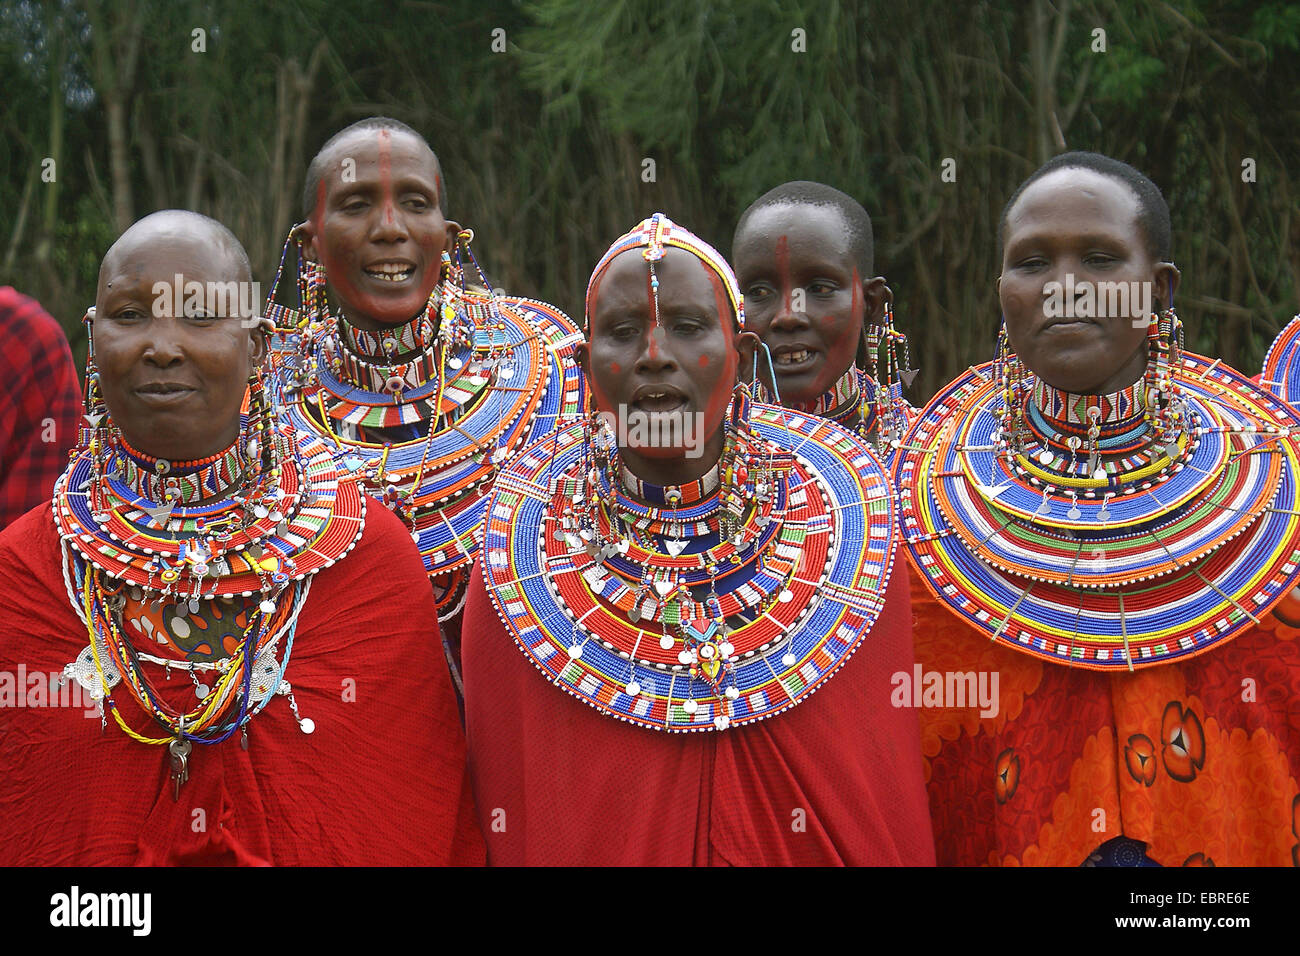 Massai groupe avec des vêtements traditionnels, Kenya, Masai Mara Banque D'Images